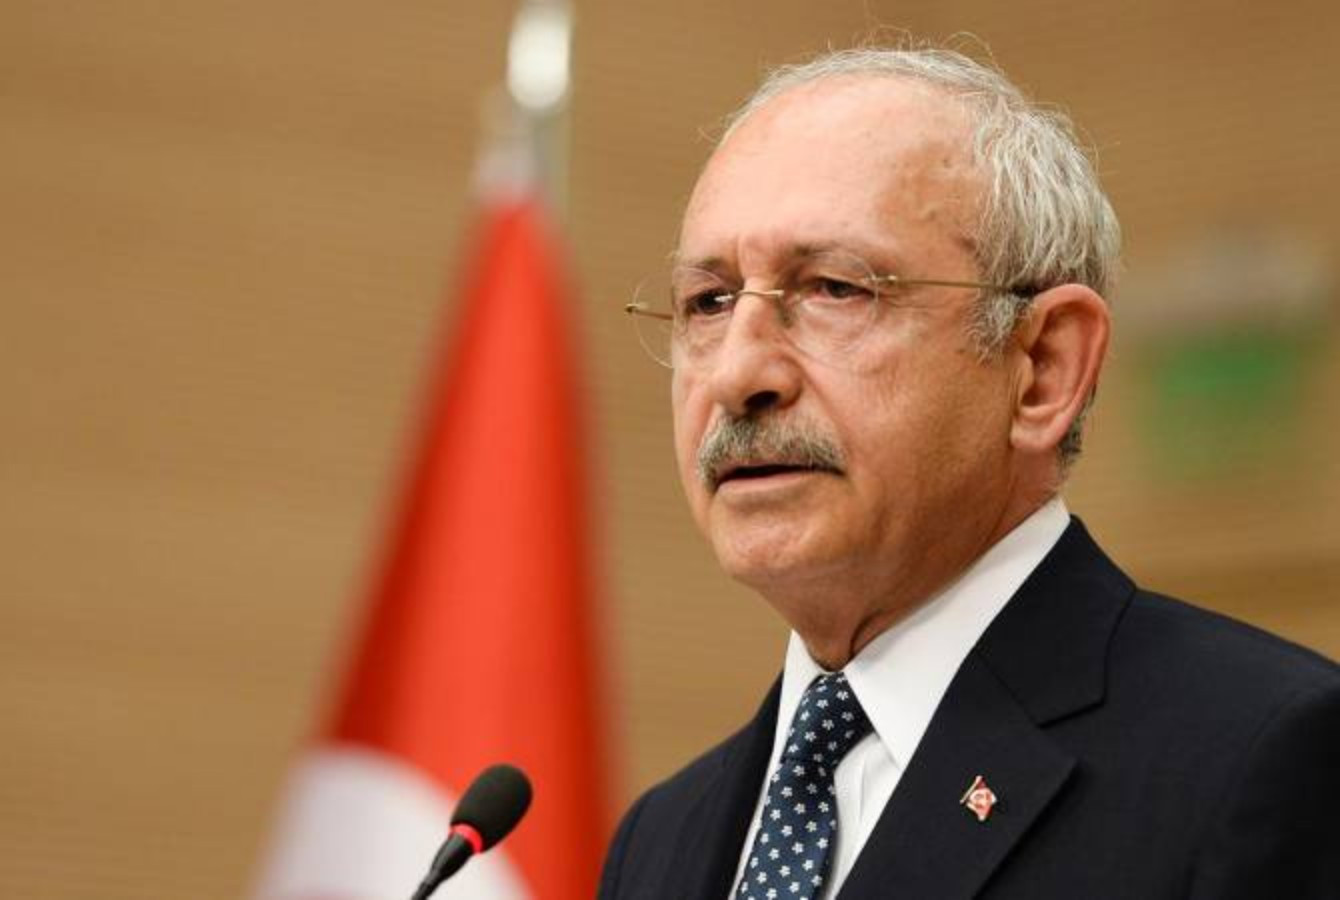 Kemal Kılıchdaroğlu telah mengajukan permohonan untuk dicalonkan sebagai calon presiden Turki – Berita dari Armenia